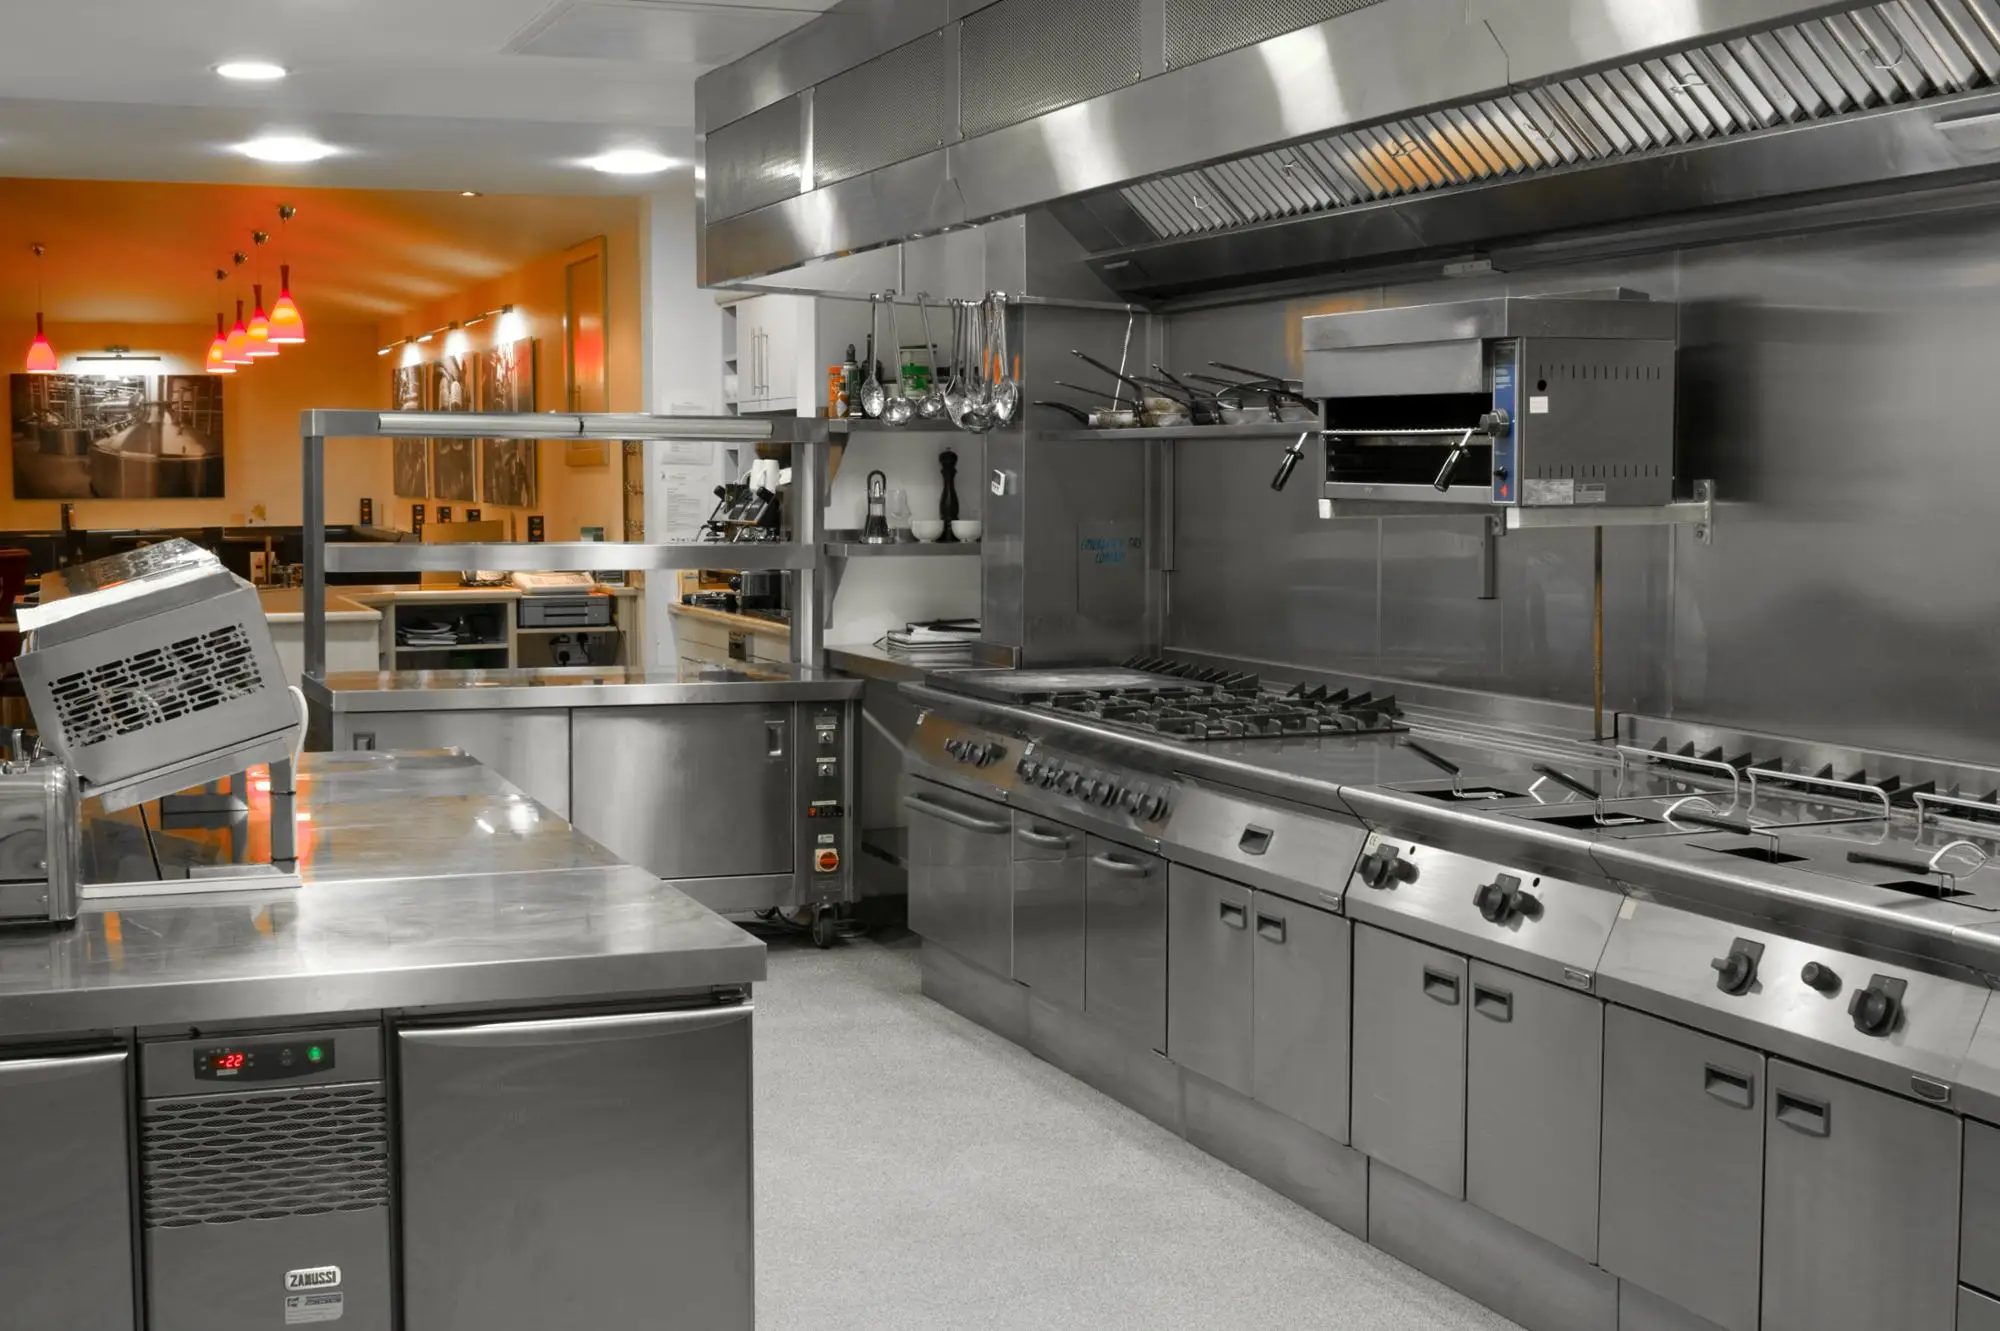 Set Lengkap Peralatan Dapur Hotel Desain Tata Letak Komersial Untuk Dapur Pusat Restoran Kantin Buy Kitchen Set Portable Tengah Peralatan Dapur